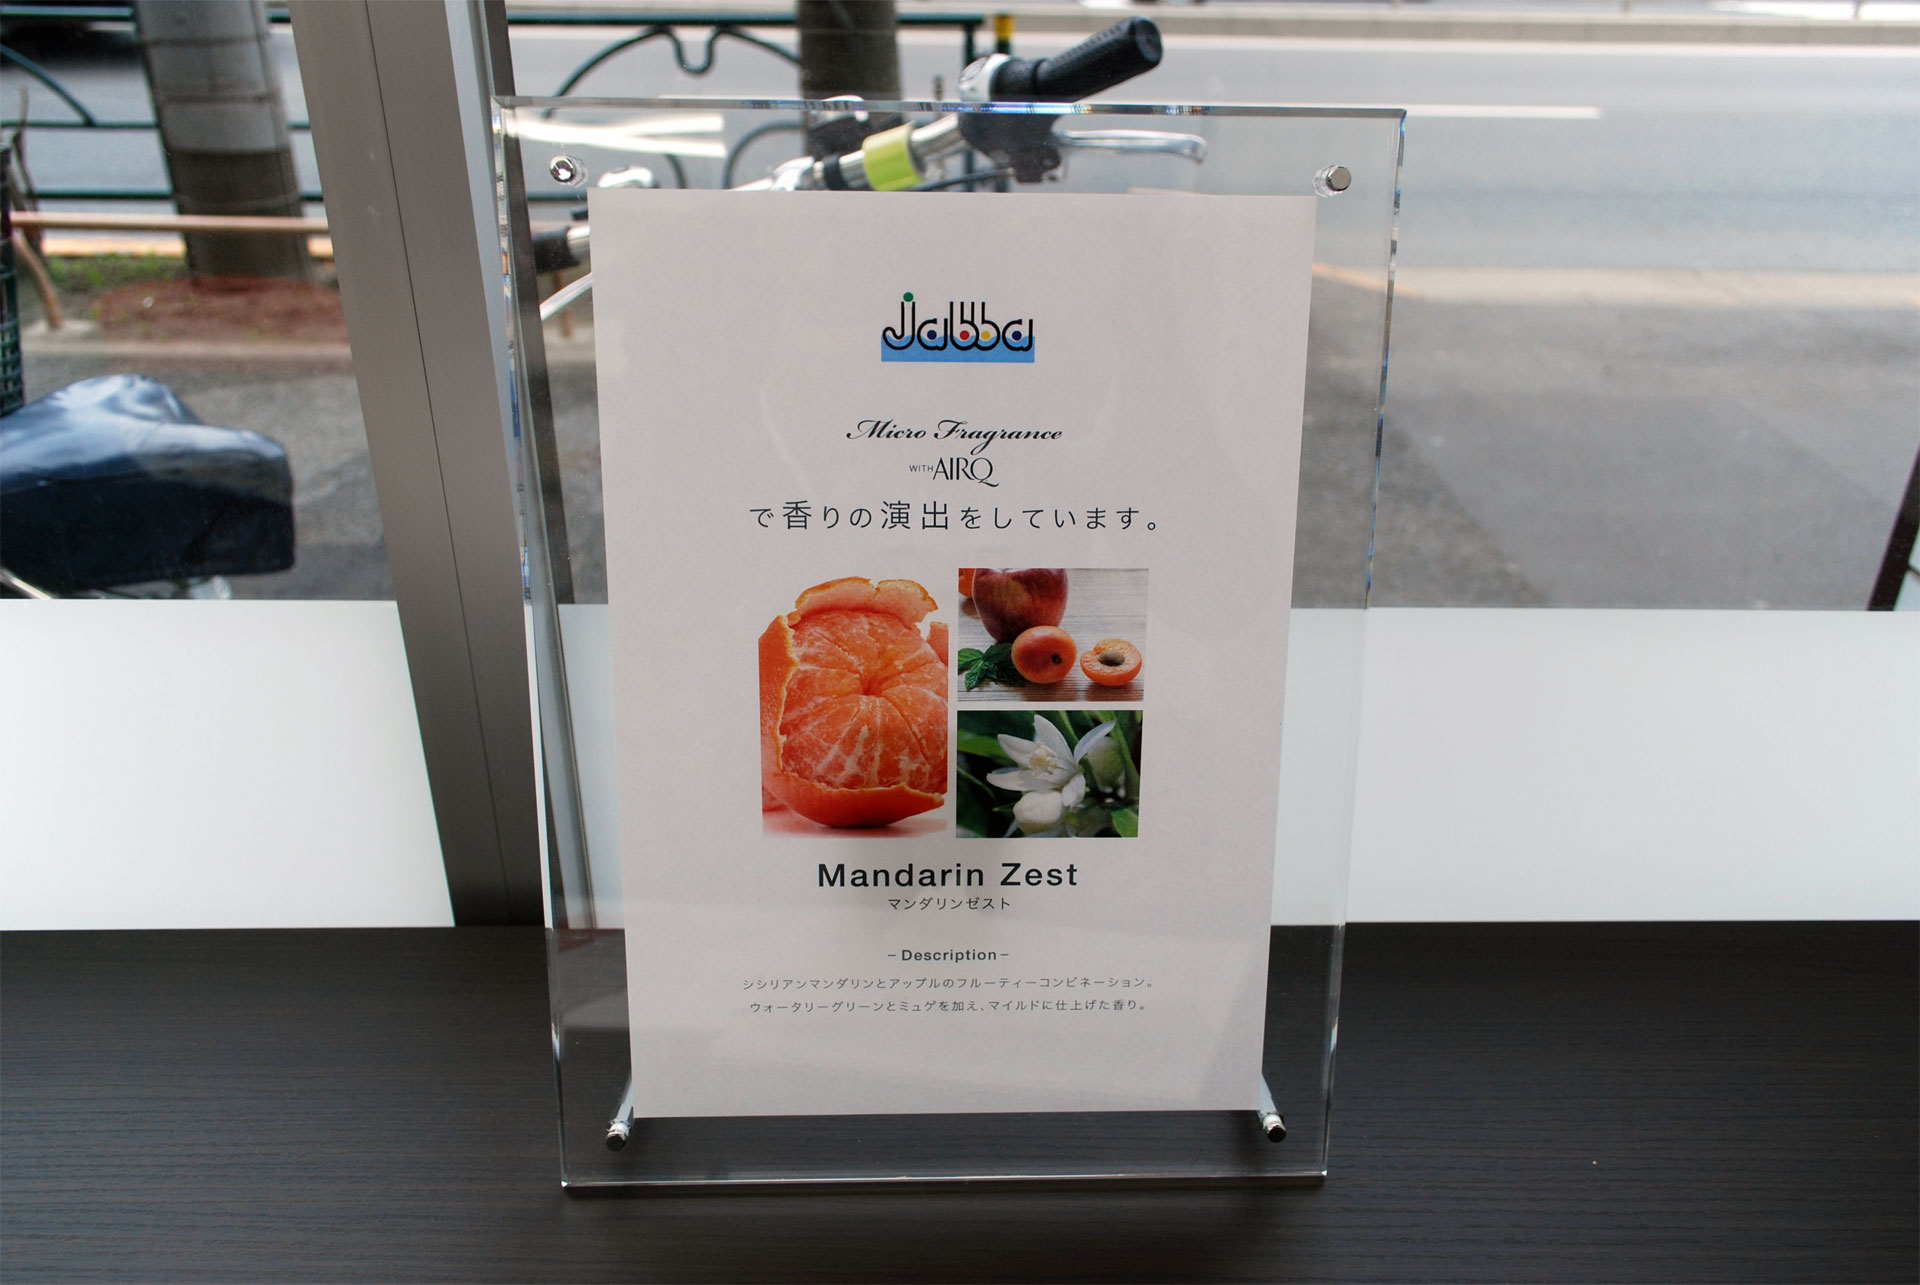 「大型コインランドリーJabba東葛西店」(東京都江戸川区)に導入されている香りをコントロールする装置「AirQ」の説明書き